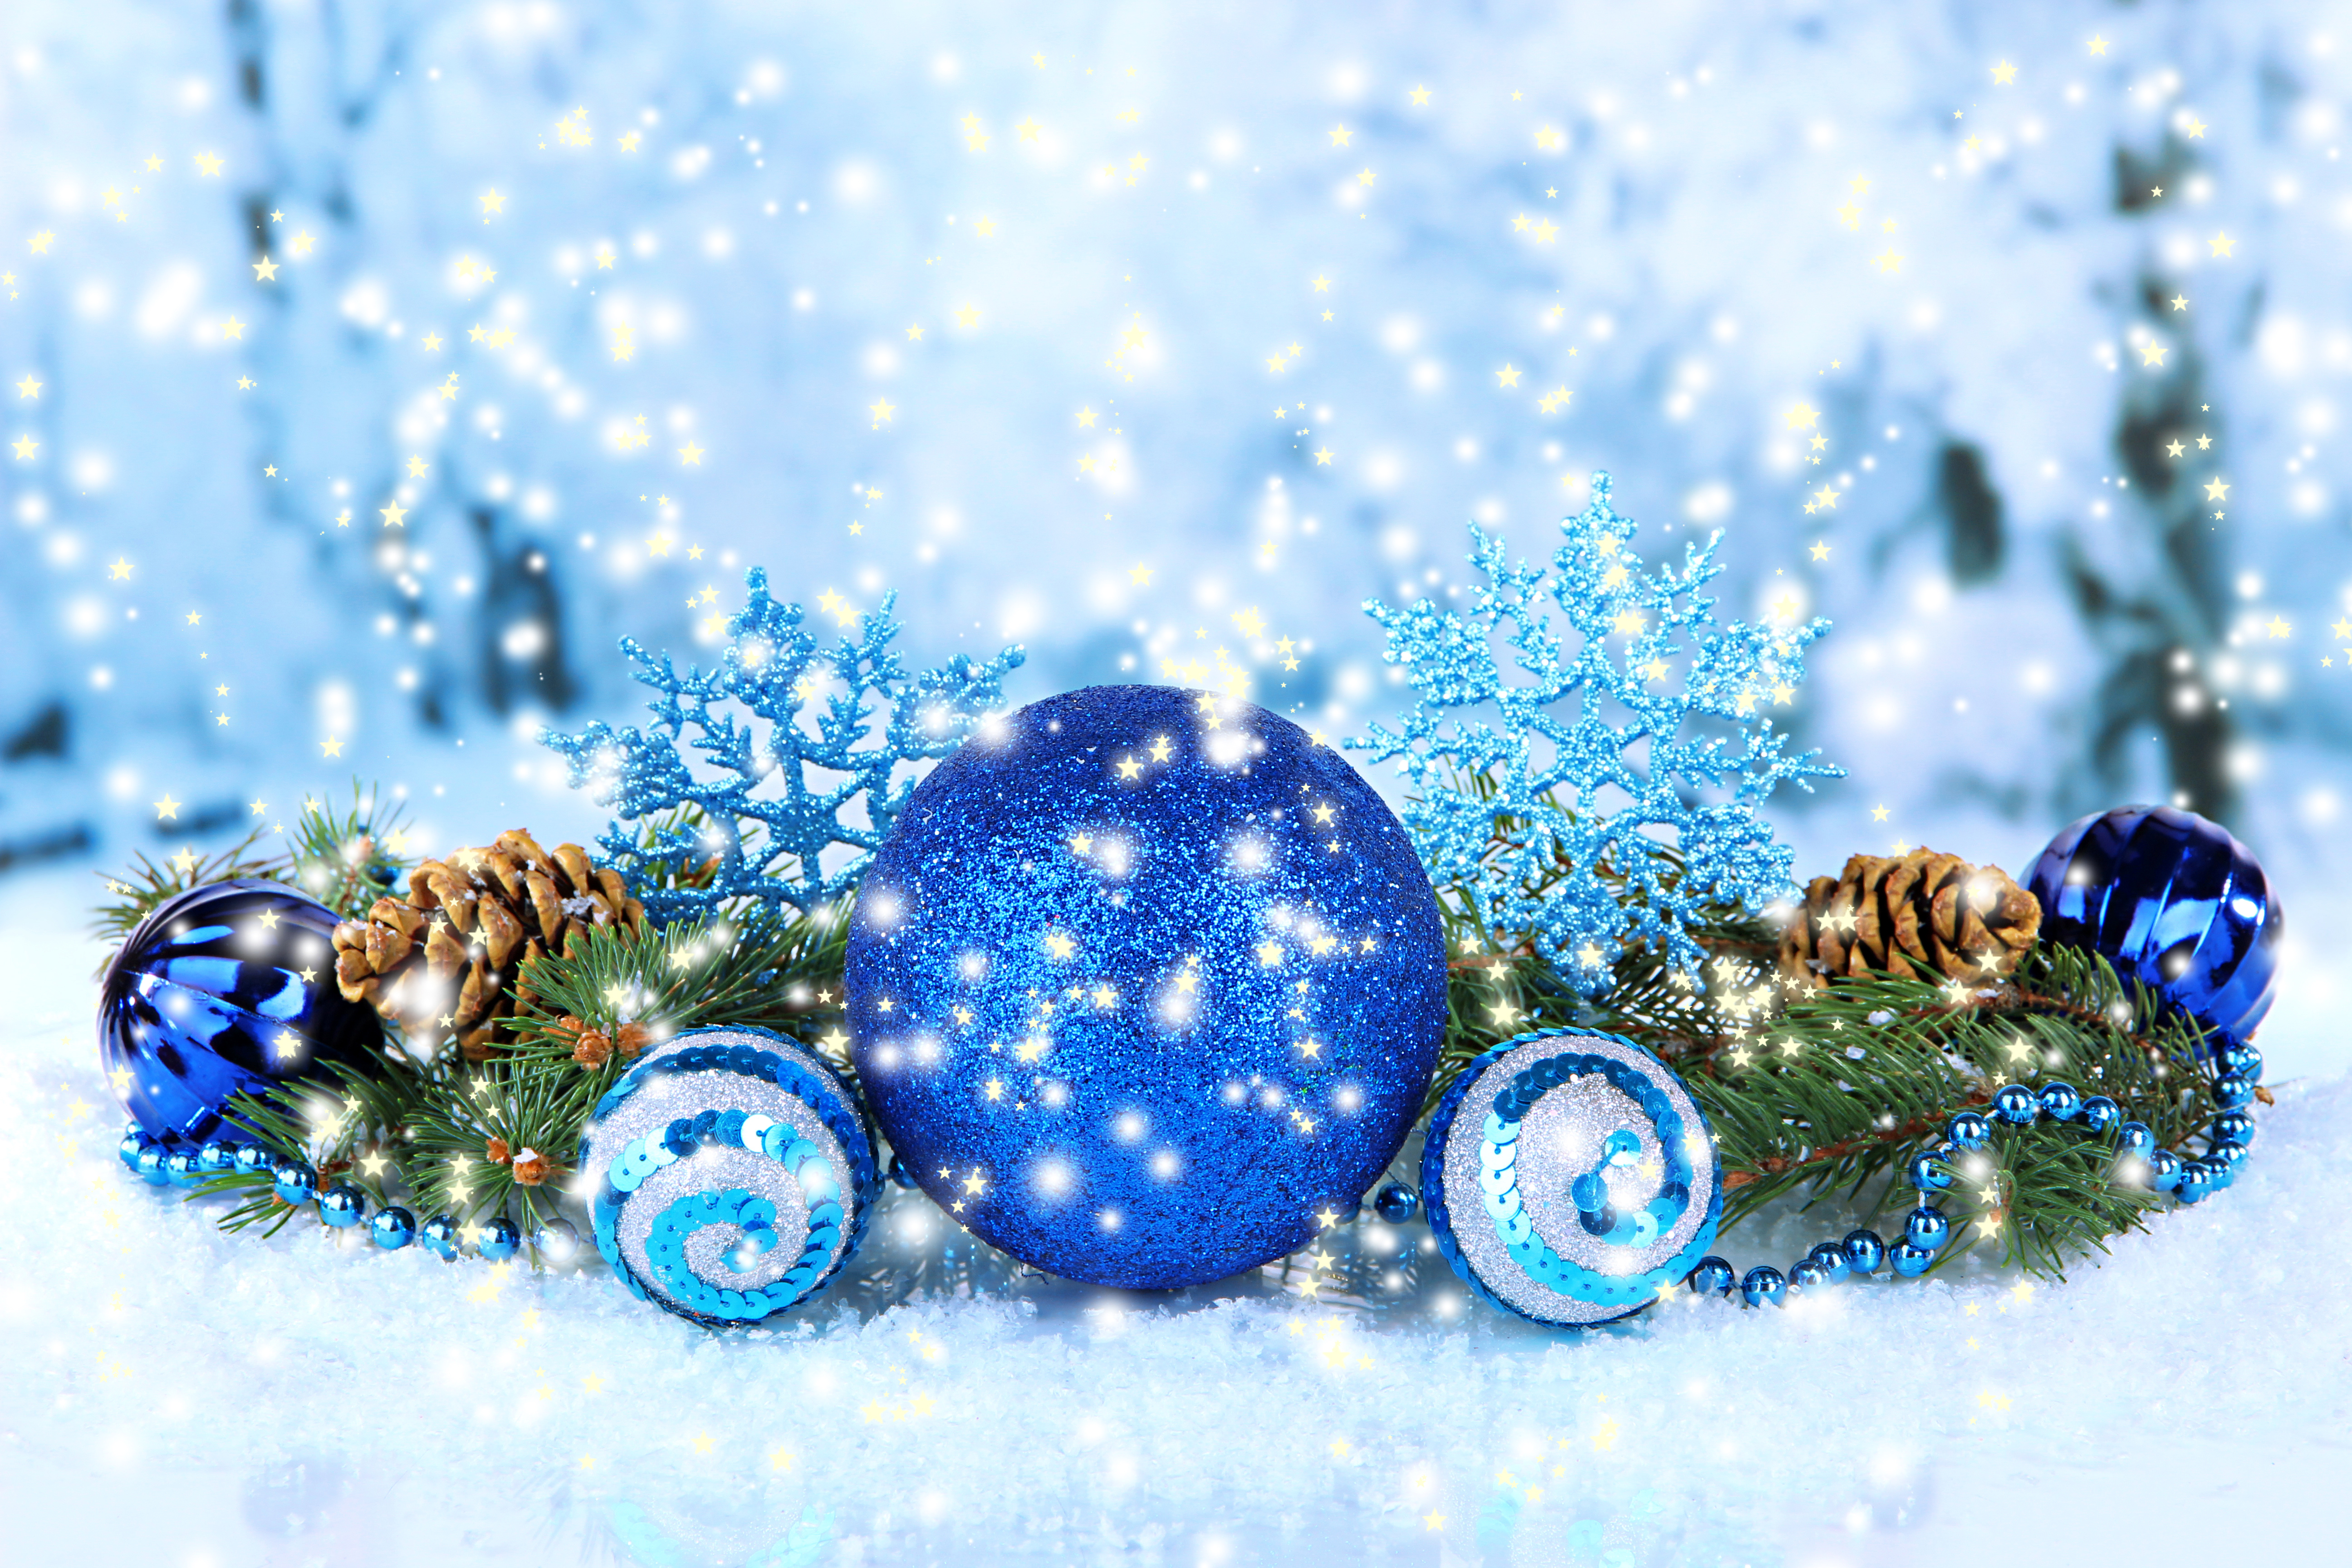 Шары украшения новый год снег Balls decoration new year snow скачать